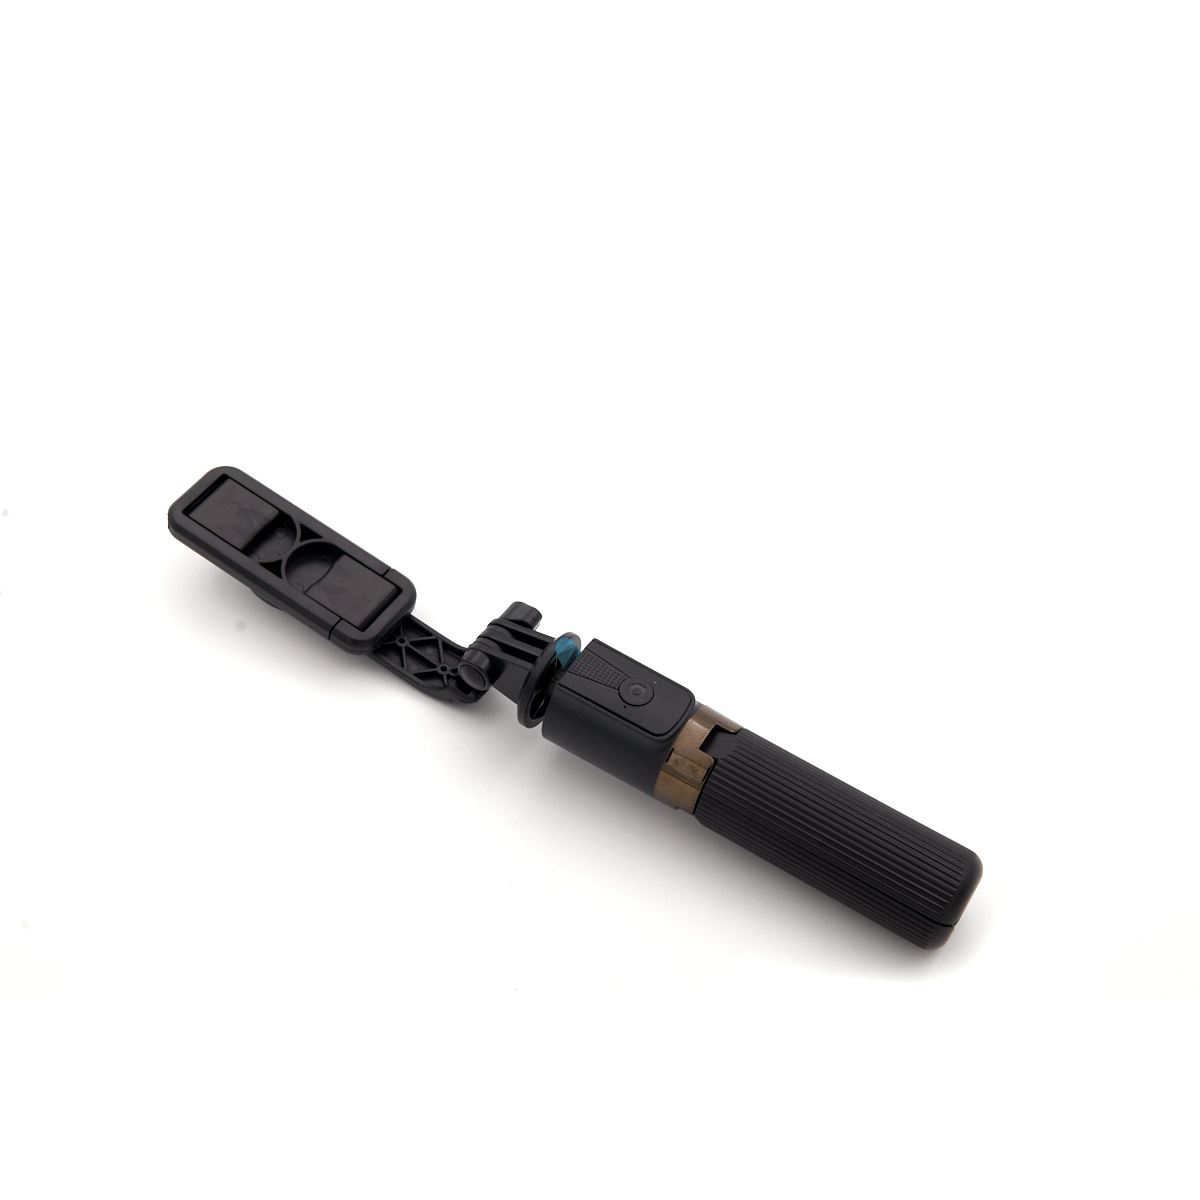 Držač za mobilni telefon - štap za selfie jc03 bluetooth (crni)